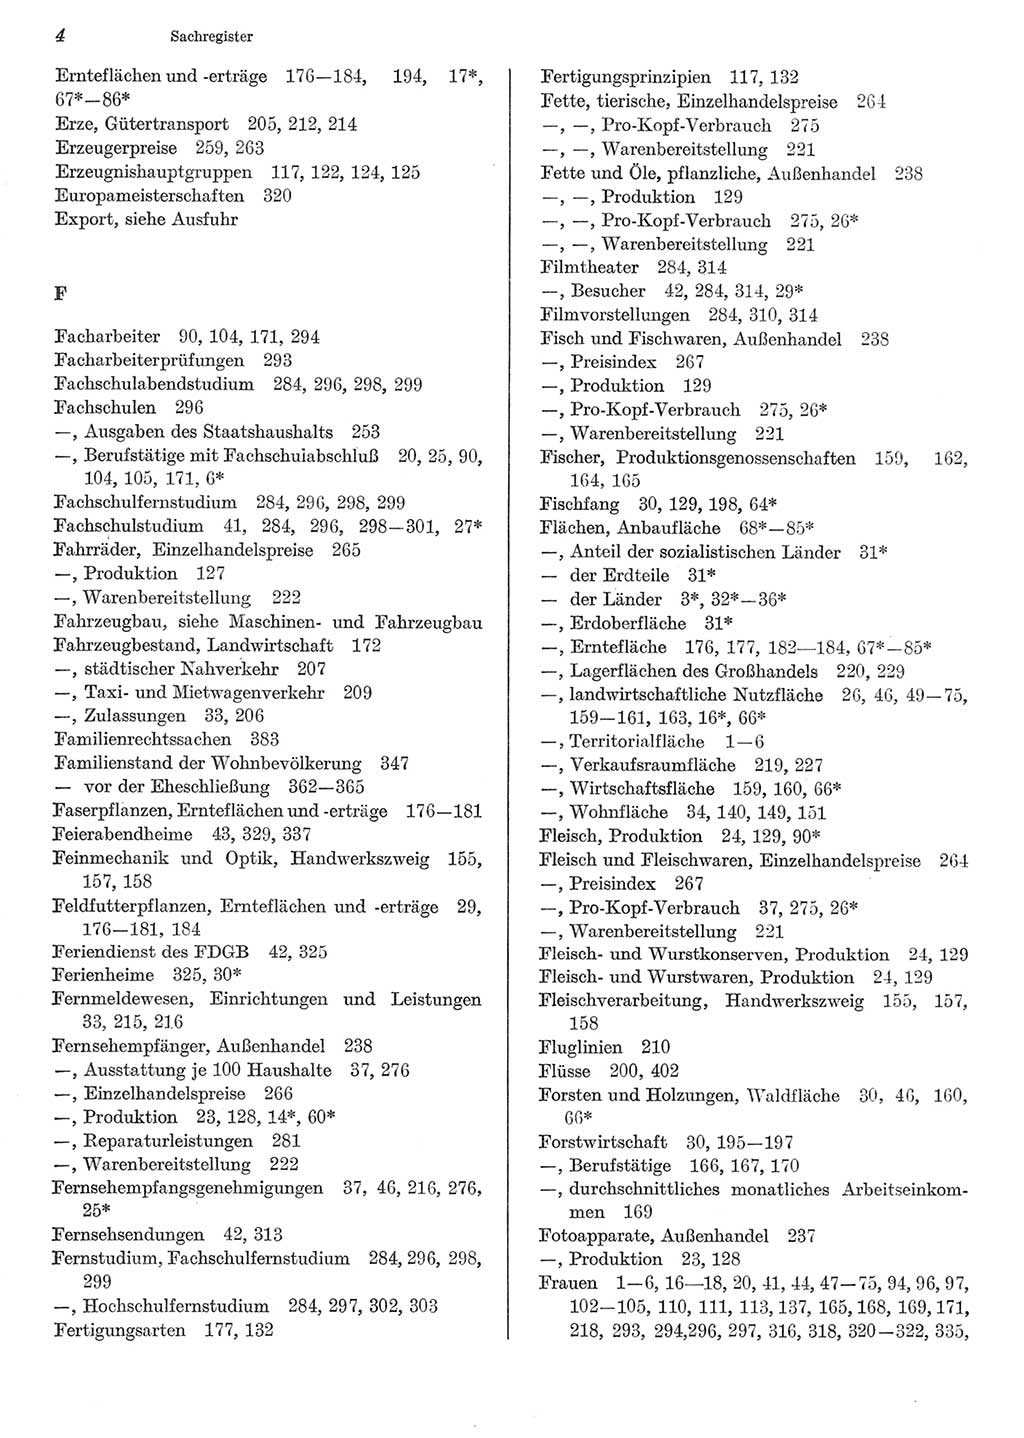 Statistisches Jahrbuch der Deutschen Demokratischen Republik (DDR) 1981, Seite 4 (Stat. Jb. DDR 1981, S. 4)